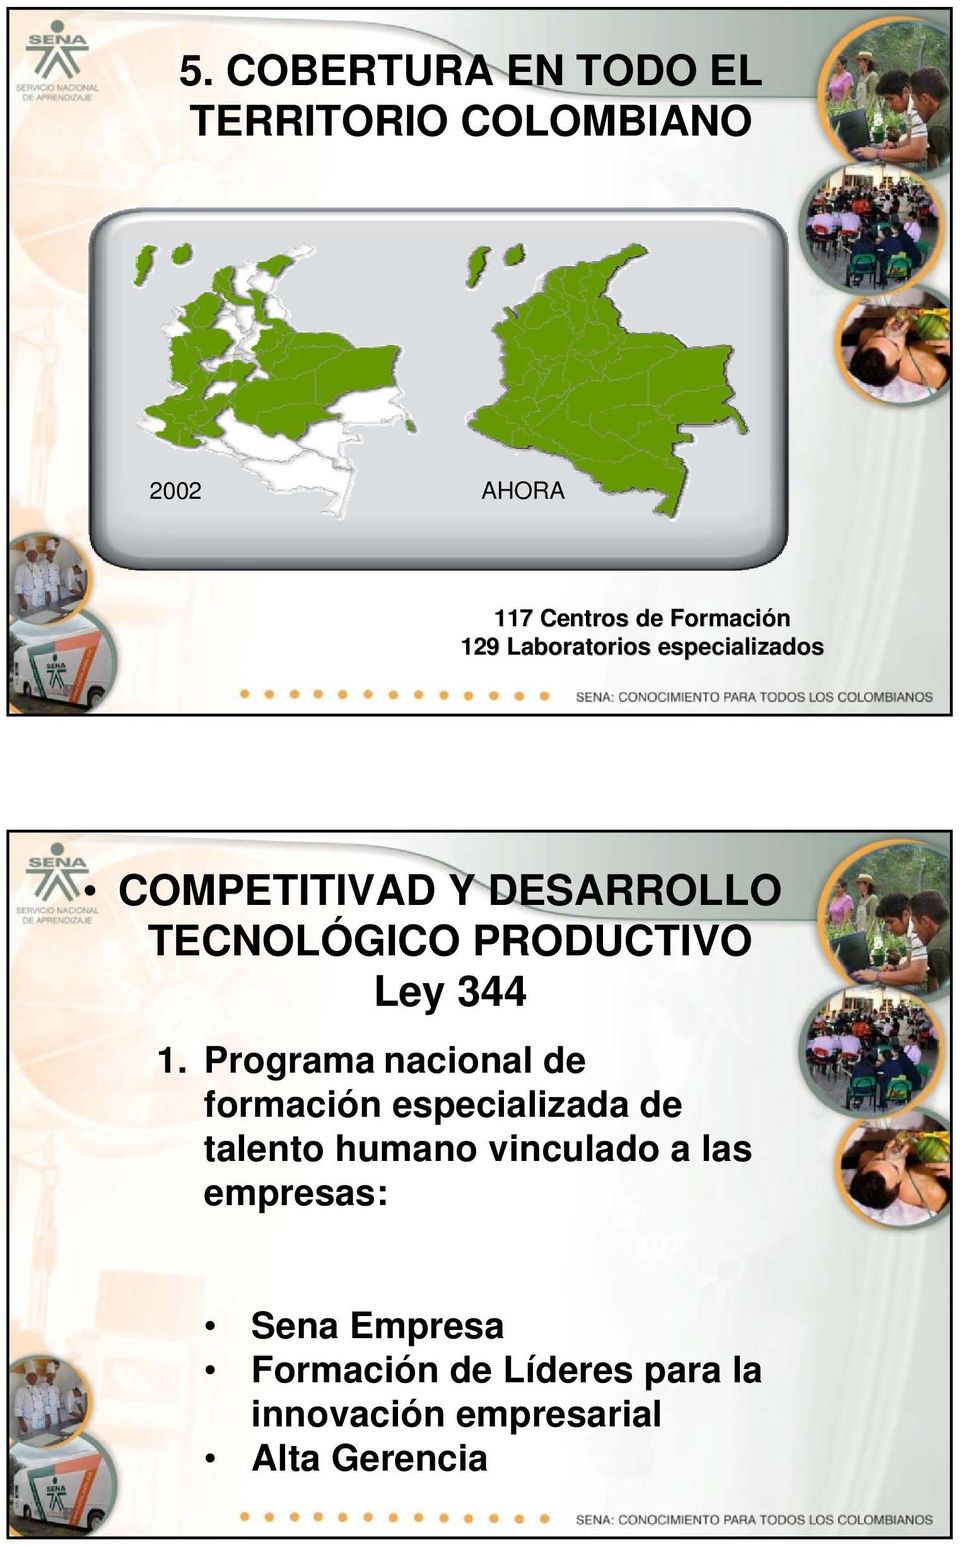 1. Programa nacional de formación especializada de talento humano vinculado a las